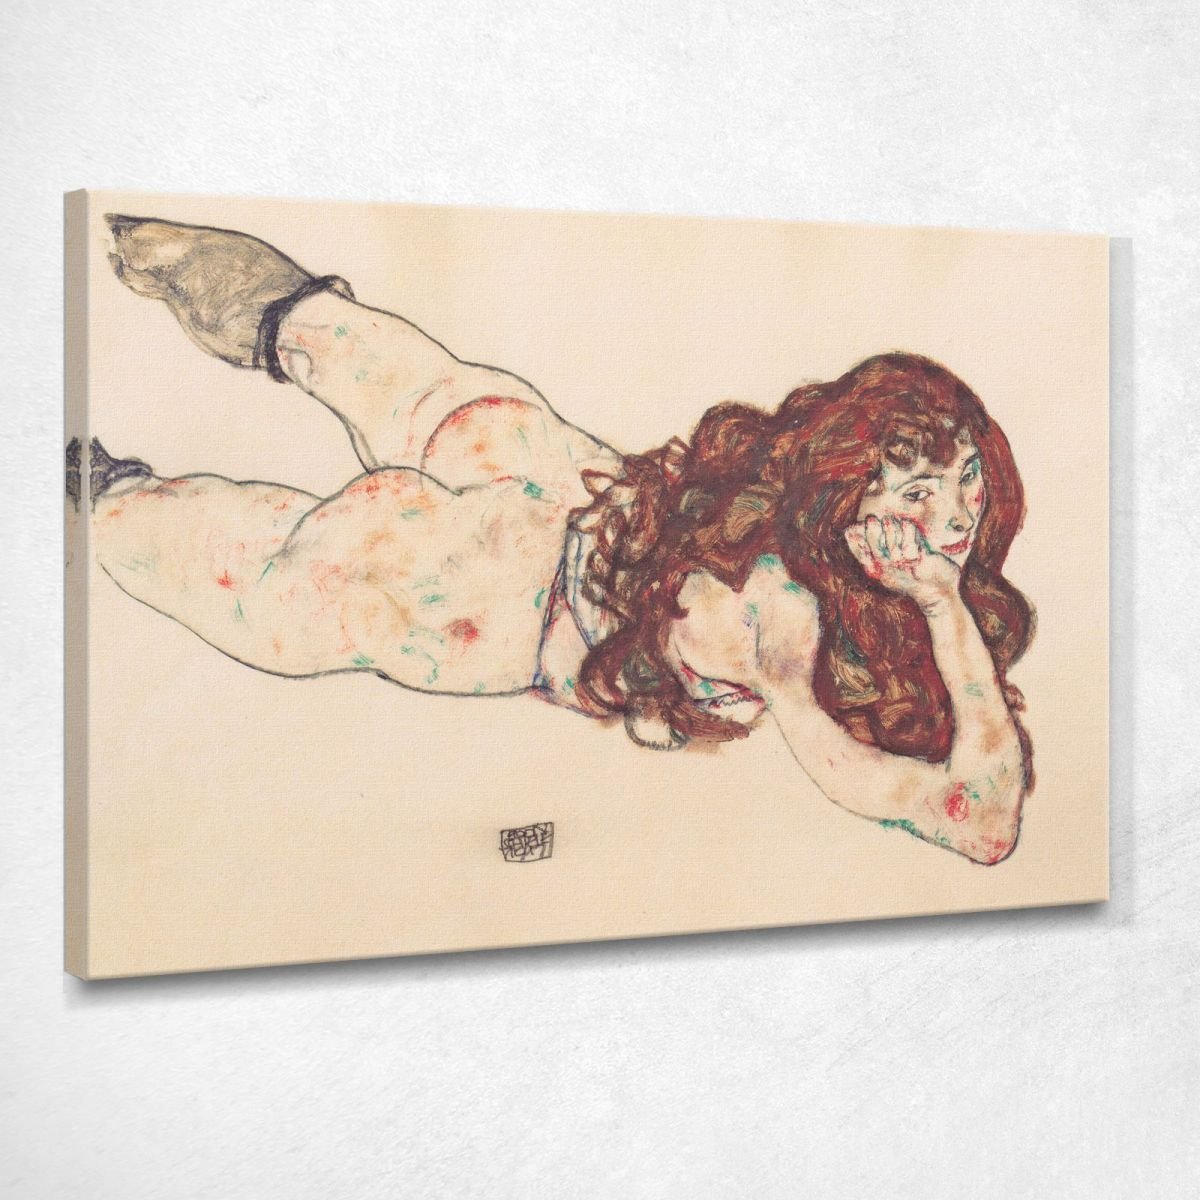 Nudo Femminile Sdraiato A Pancia In Giù 1917 Egon Schiele stampa su tela egsc46